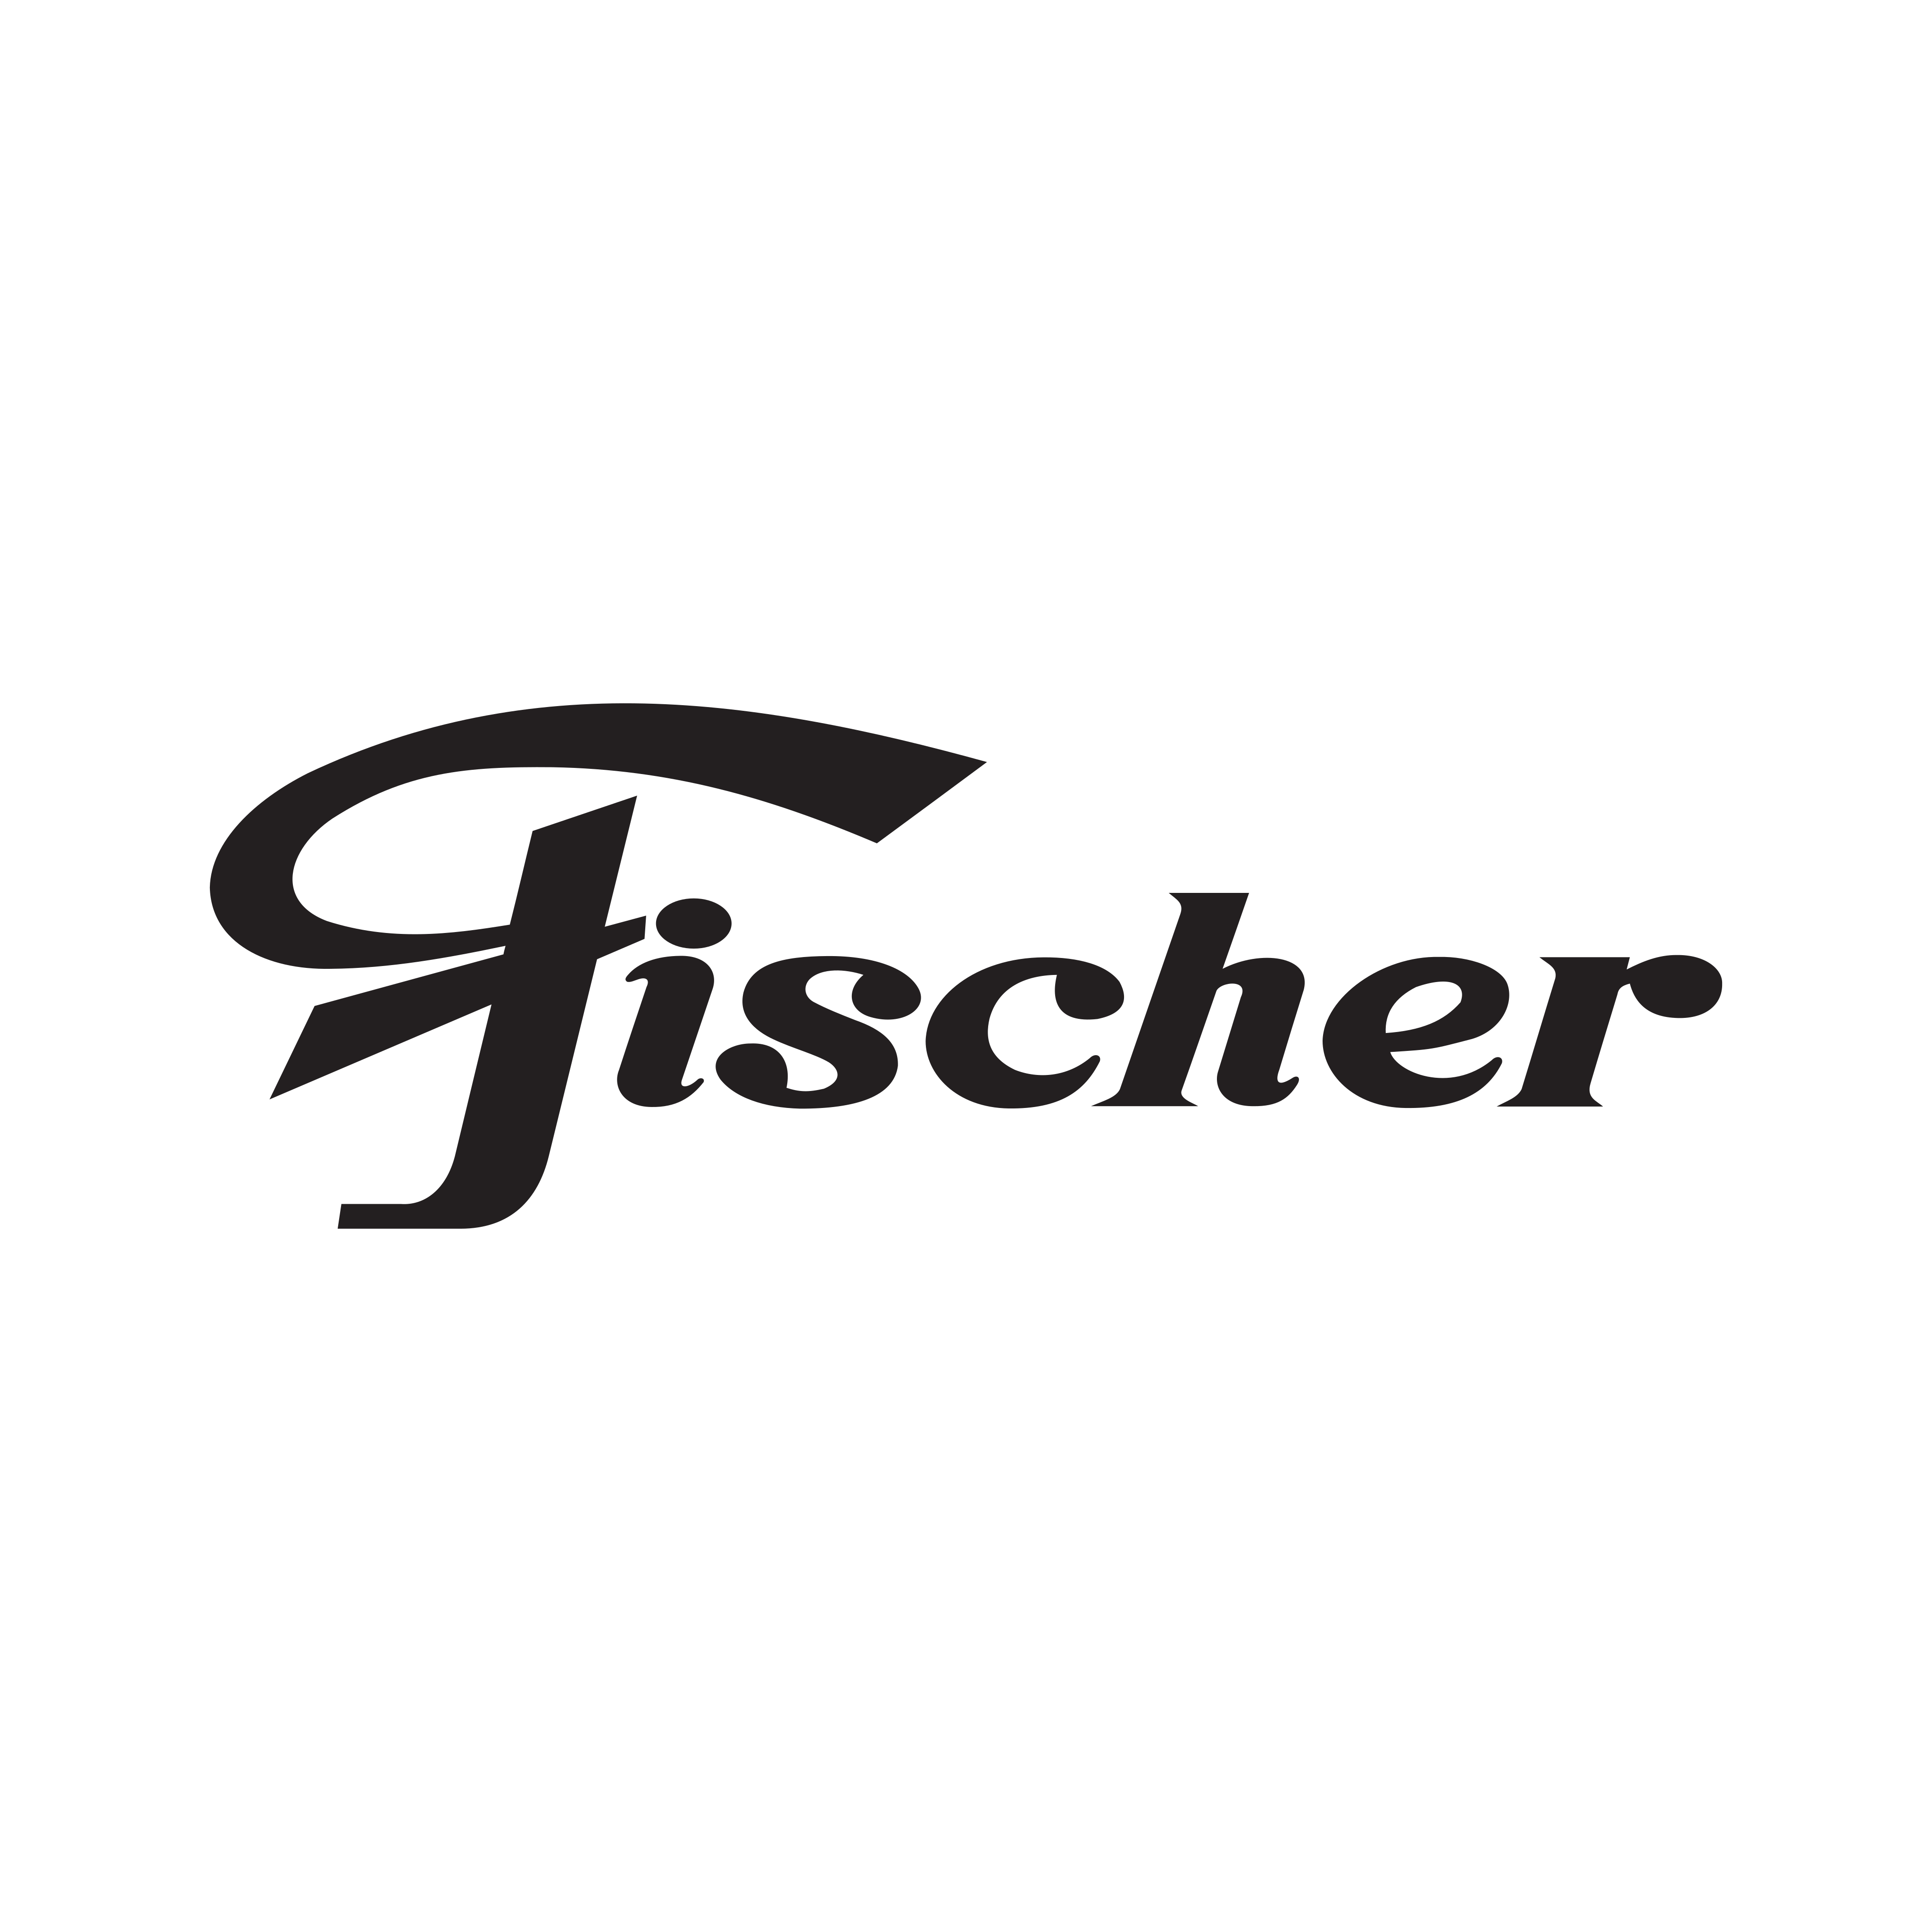 Fischer Logo PNG.